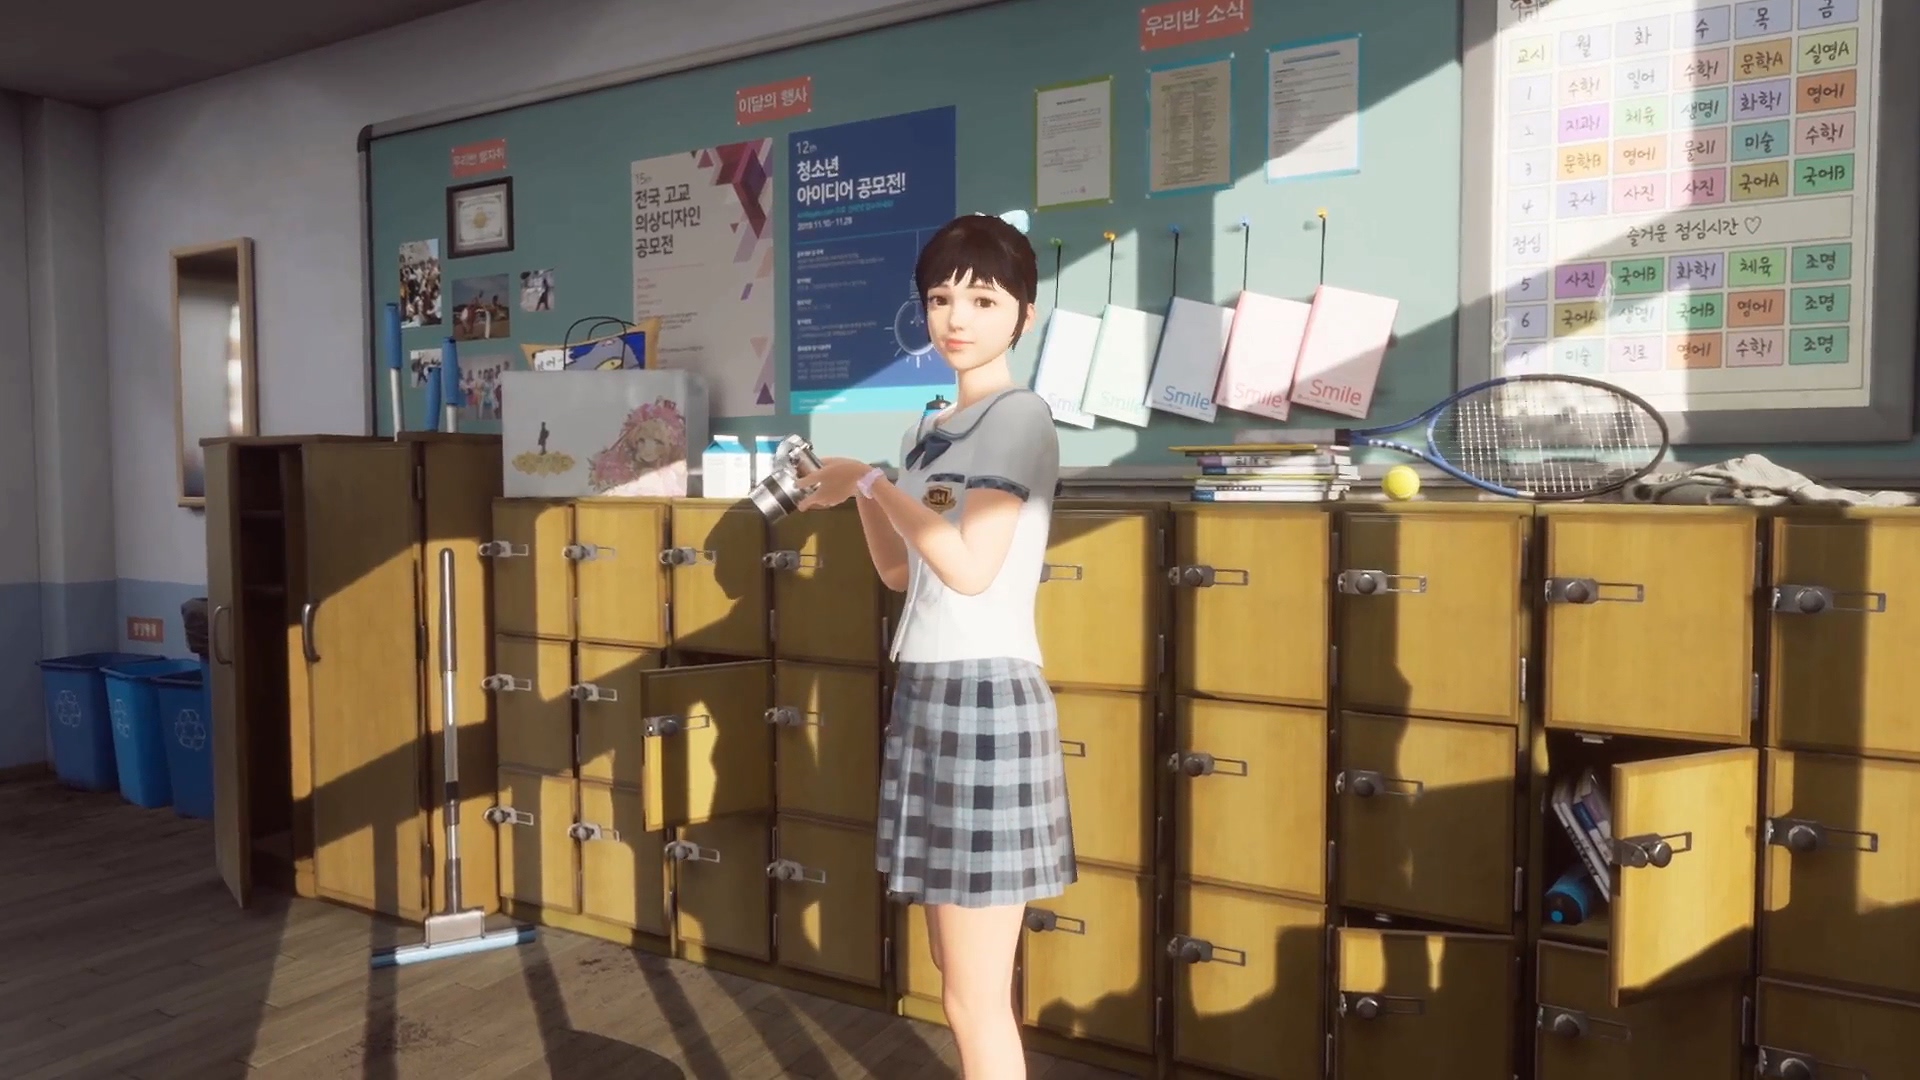 脱越水线开支商为PS4推出VR好女拍照游戏《闭注您》